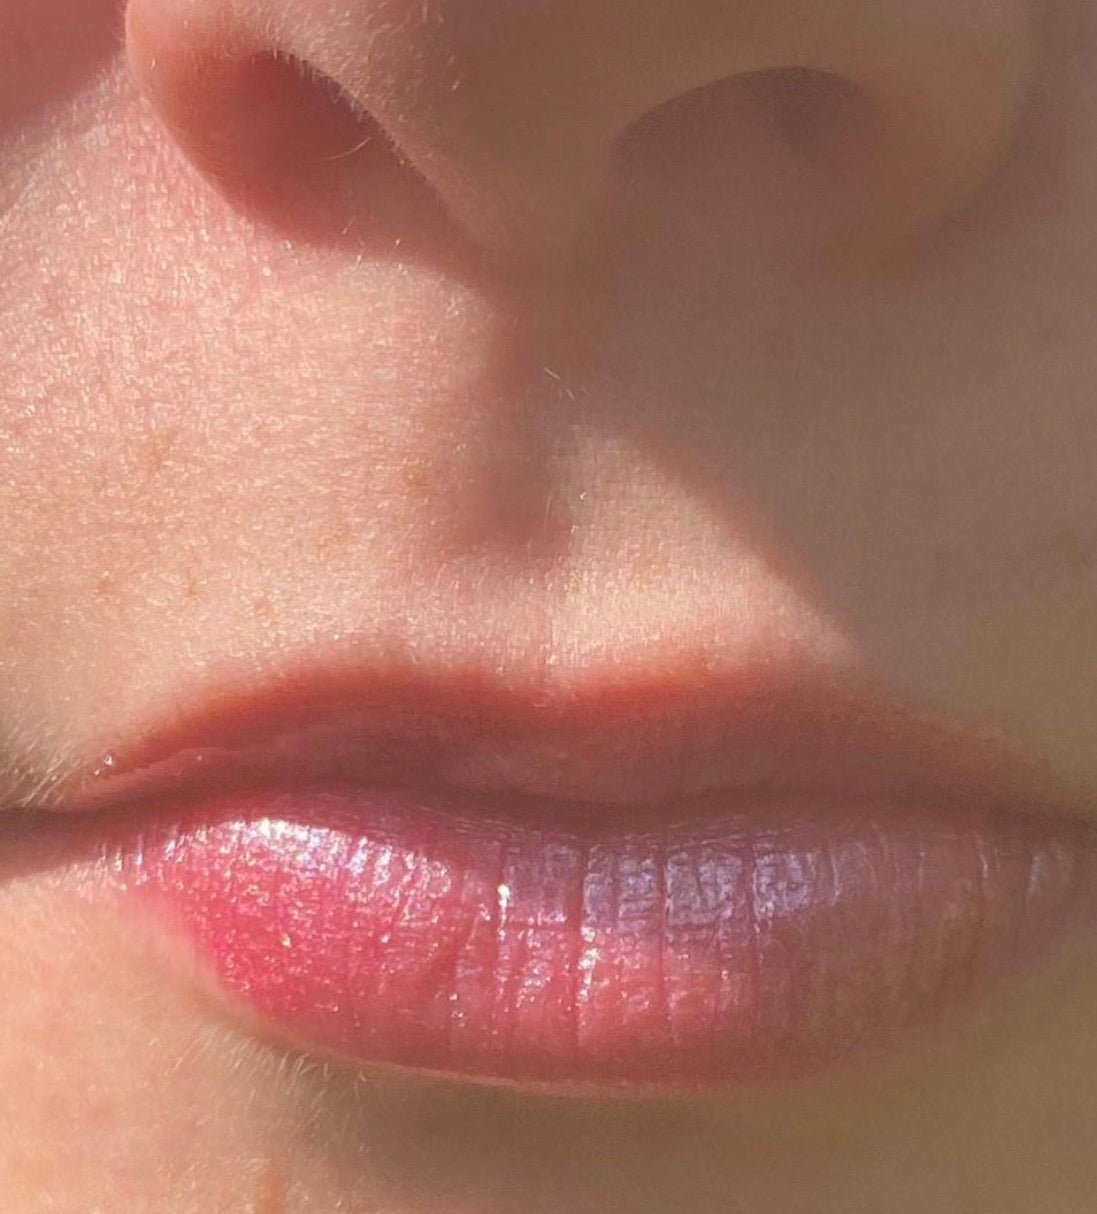 Pink Lip Gloss